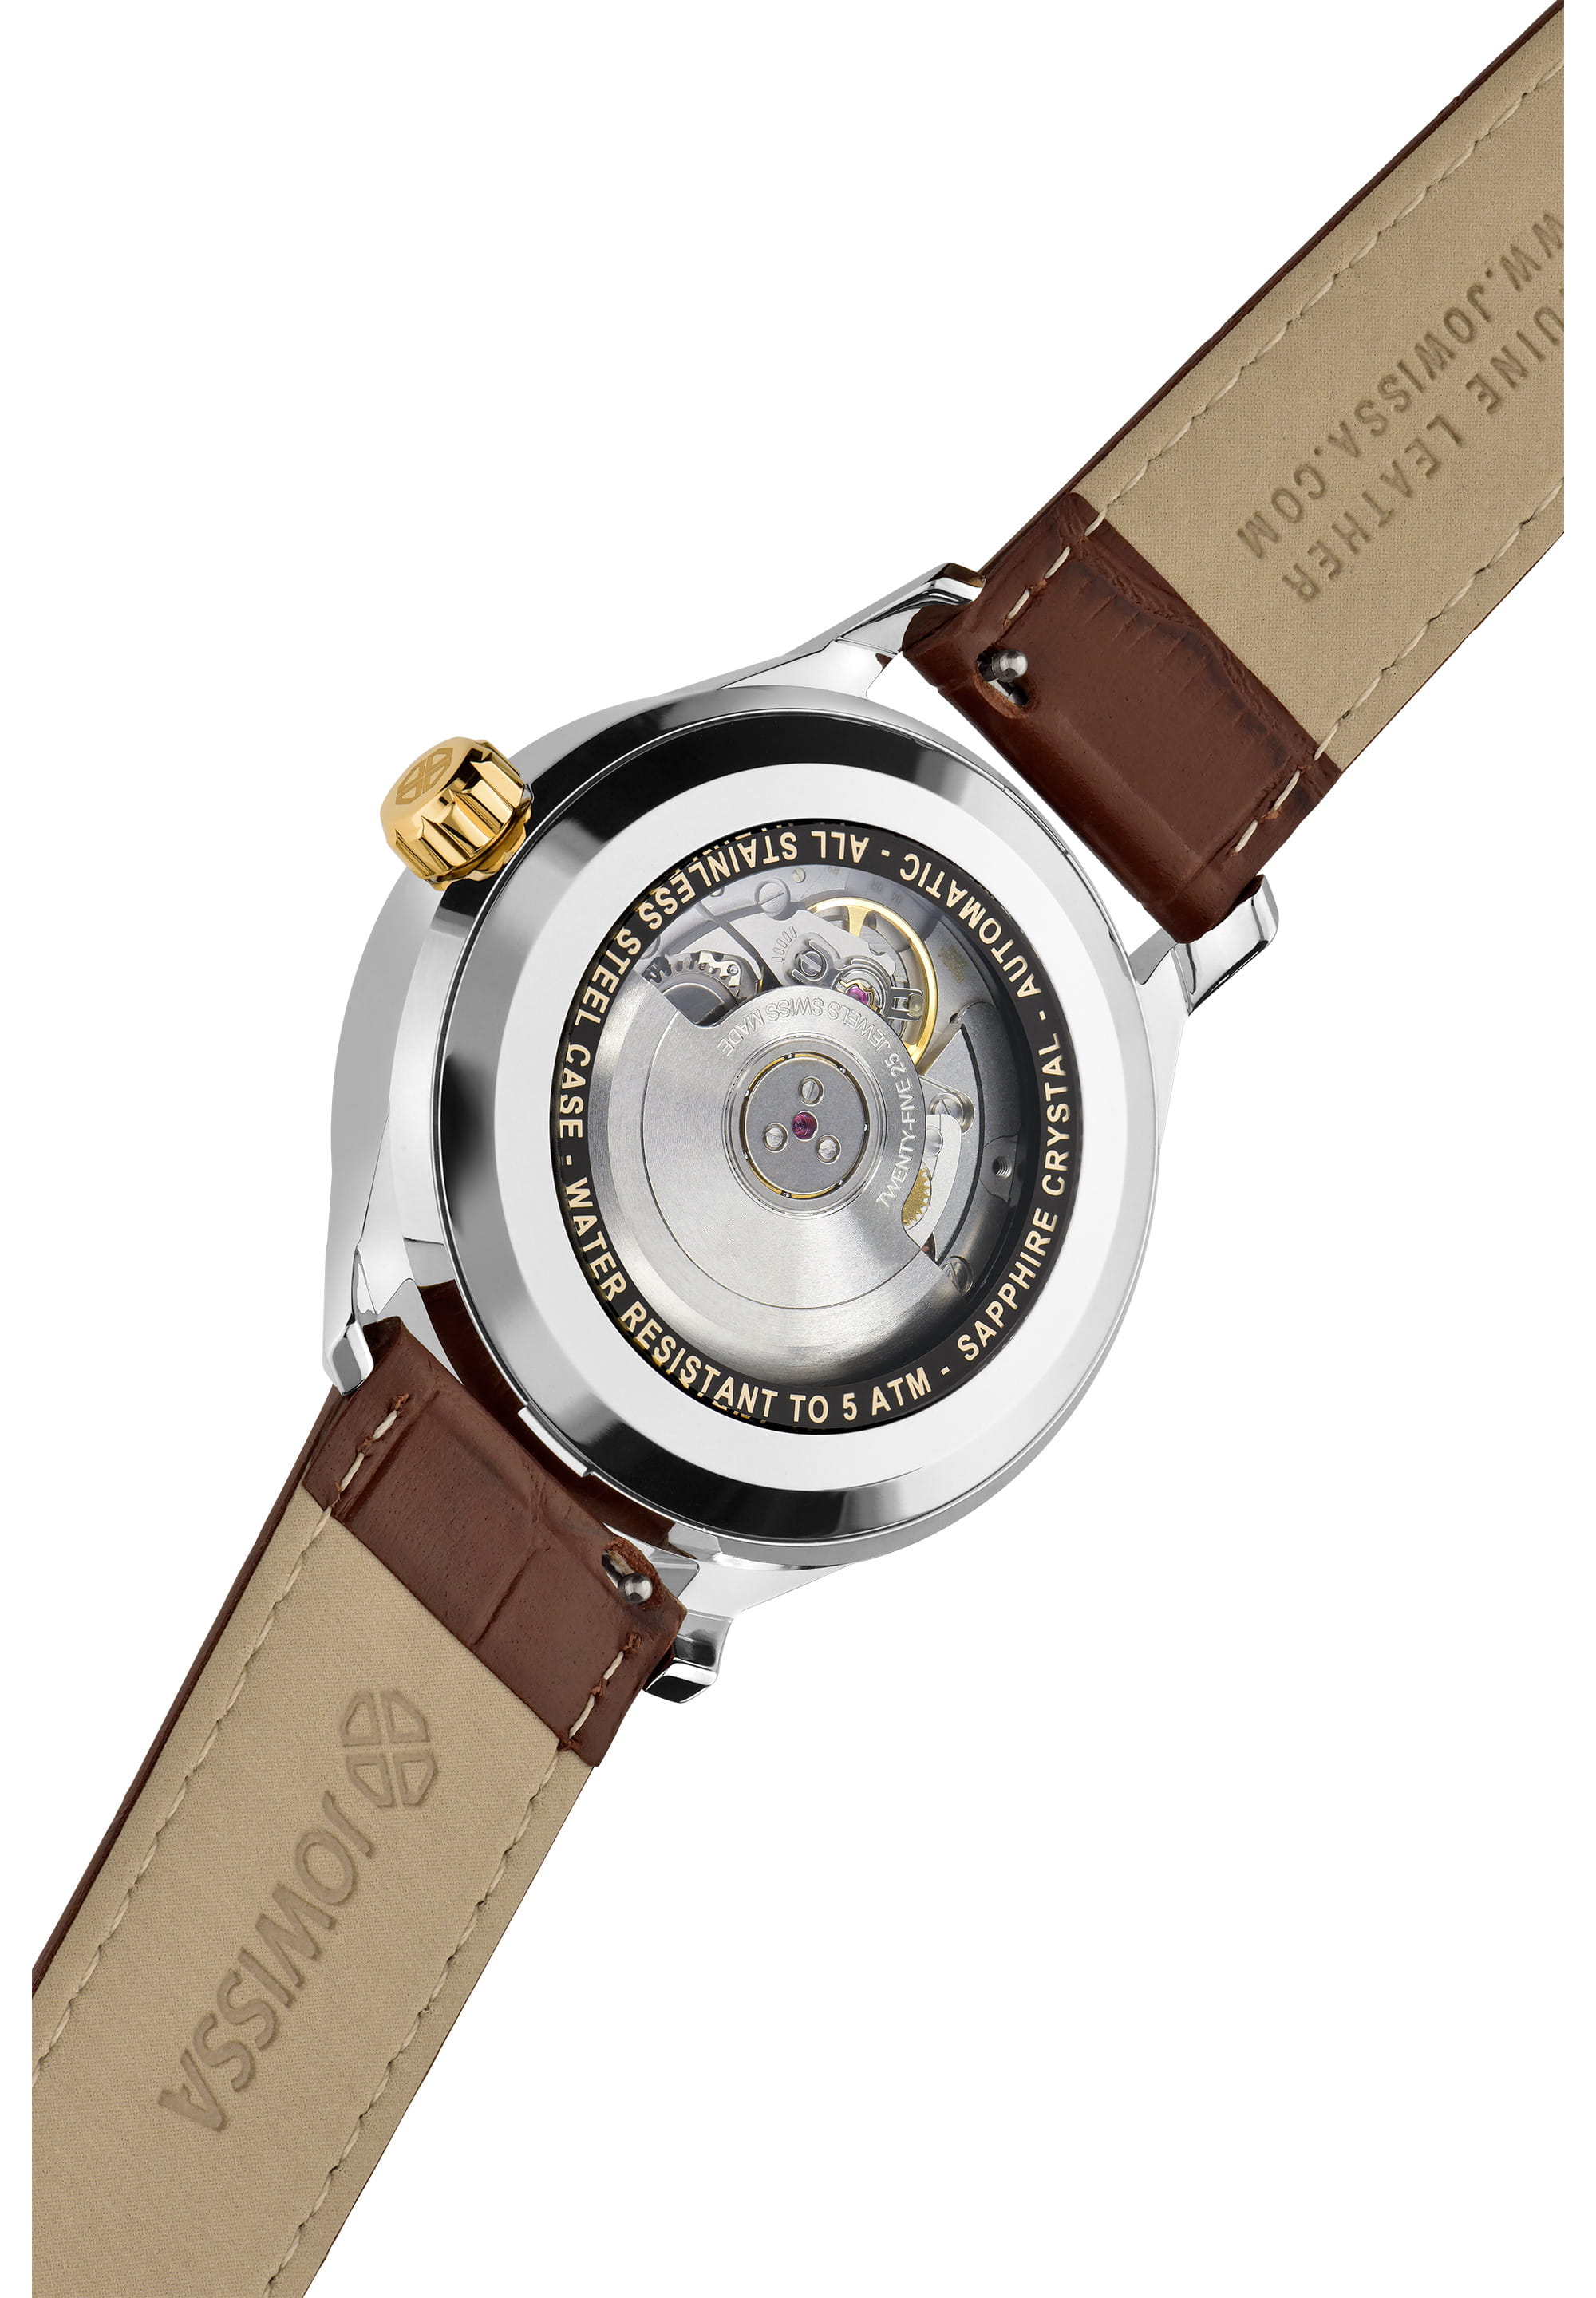 Virtuo Swiss Automatic Watch J4.557.L